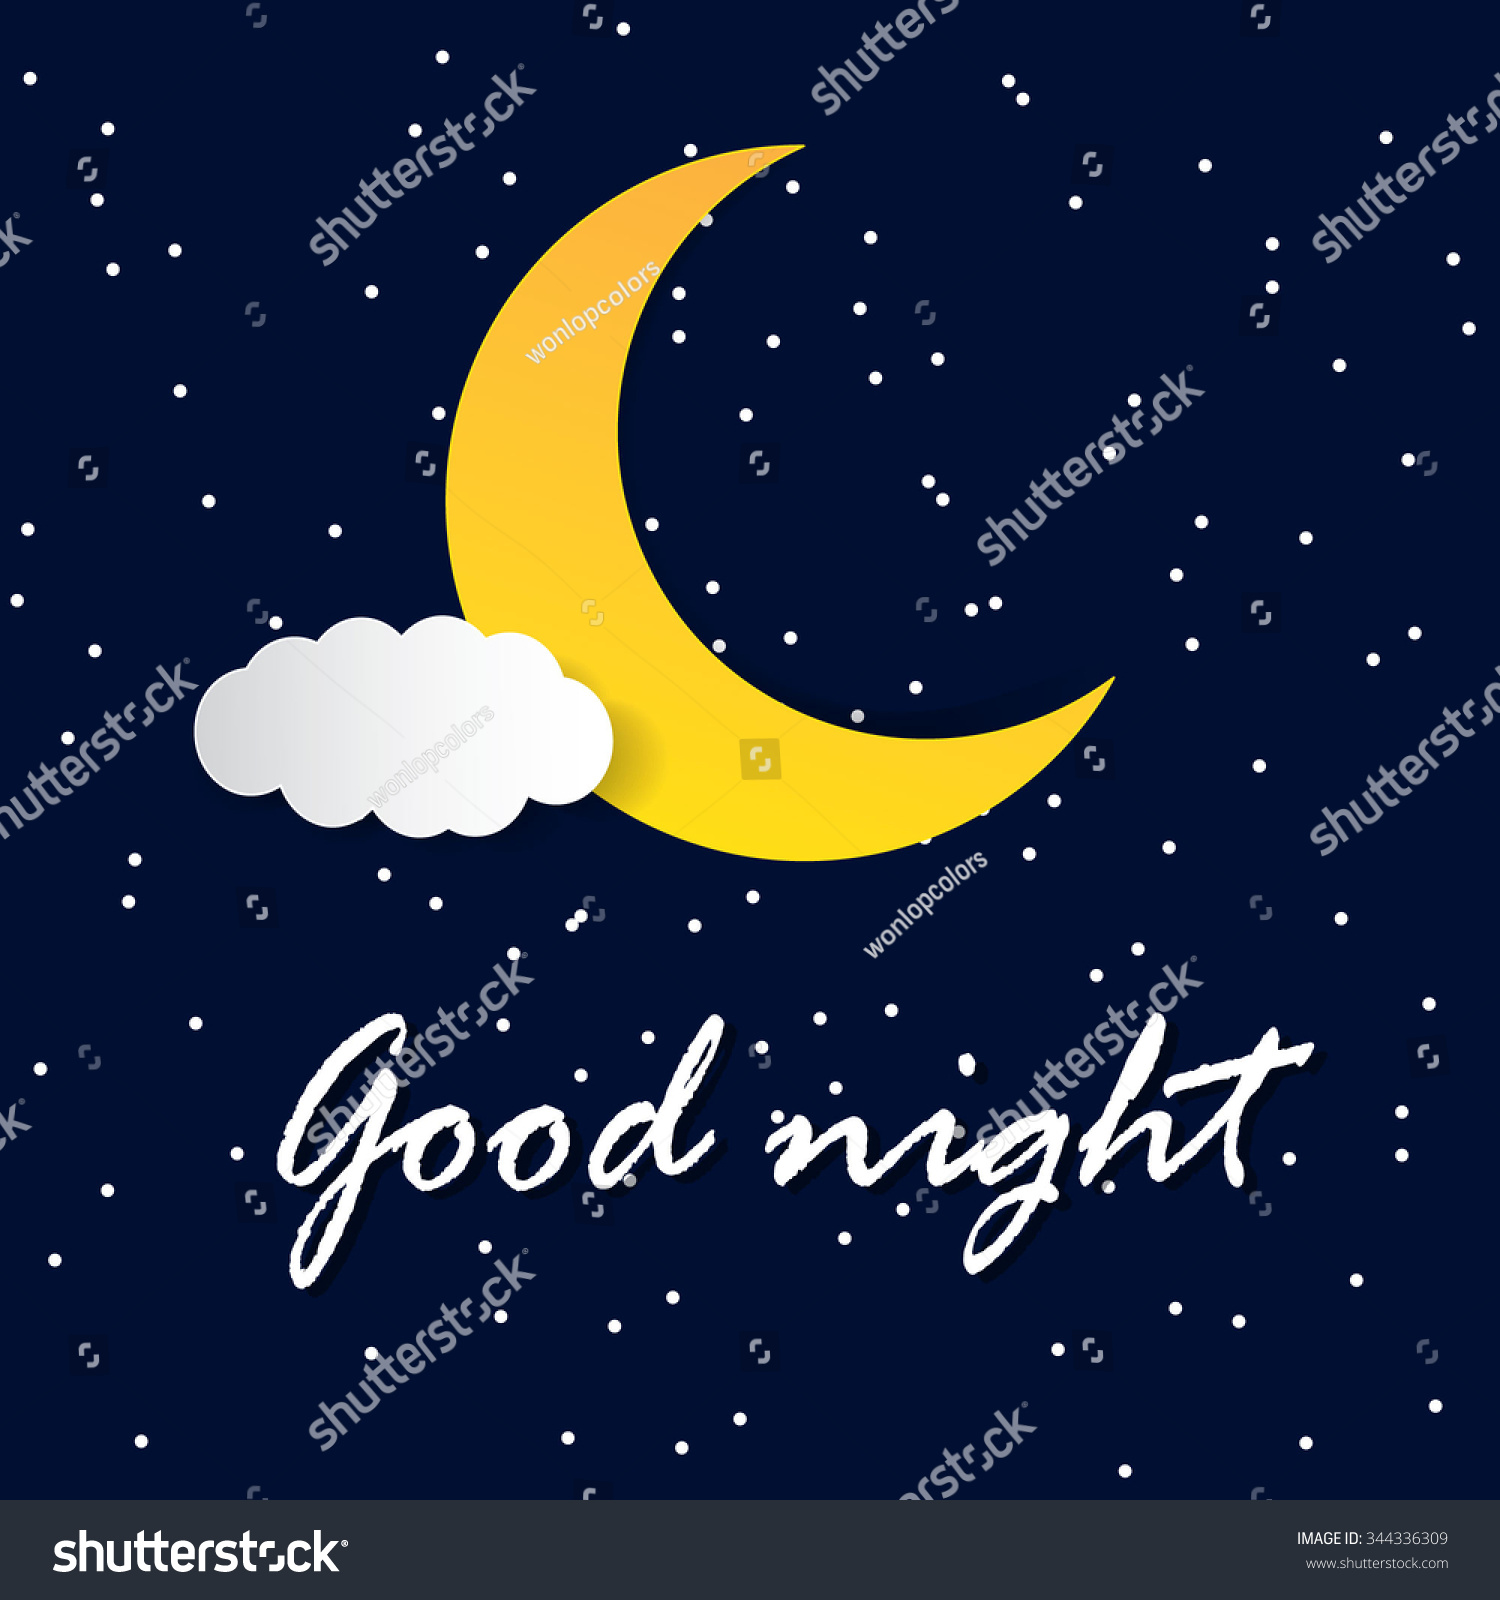 Retro Illustration Smiling Moon Wishing Good Stock Vector 344336309 ...